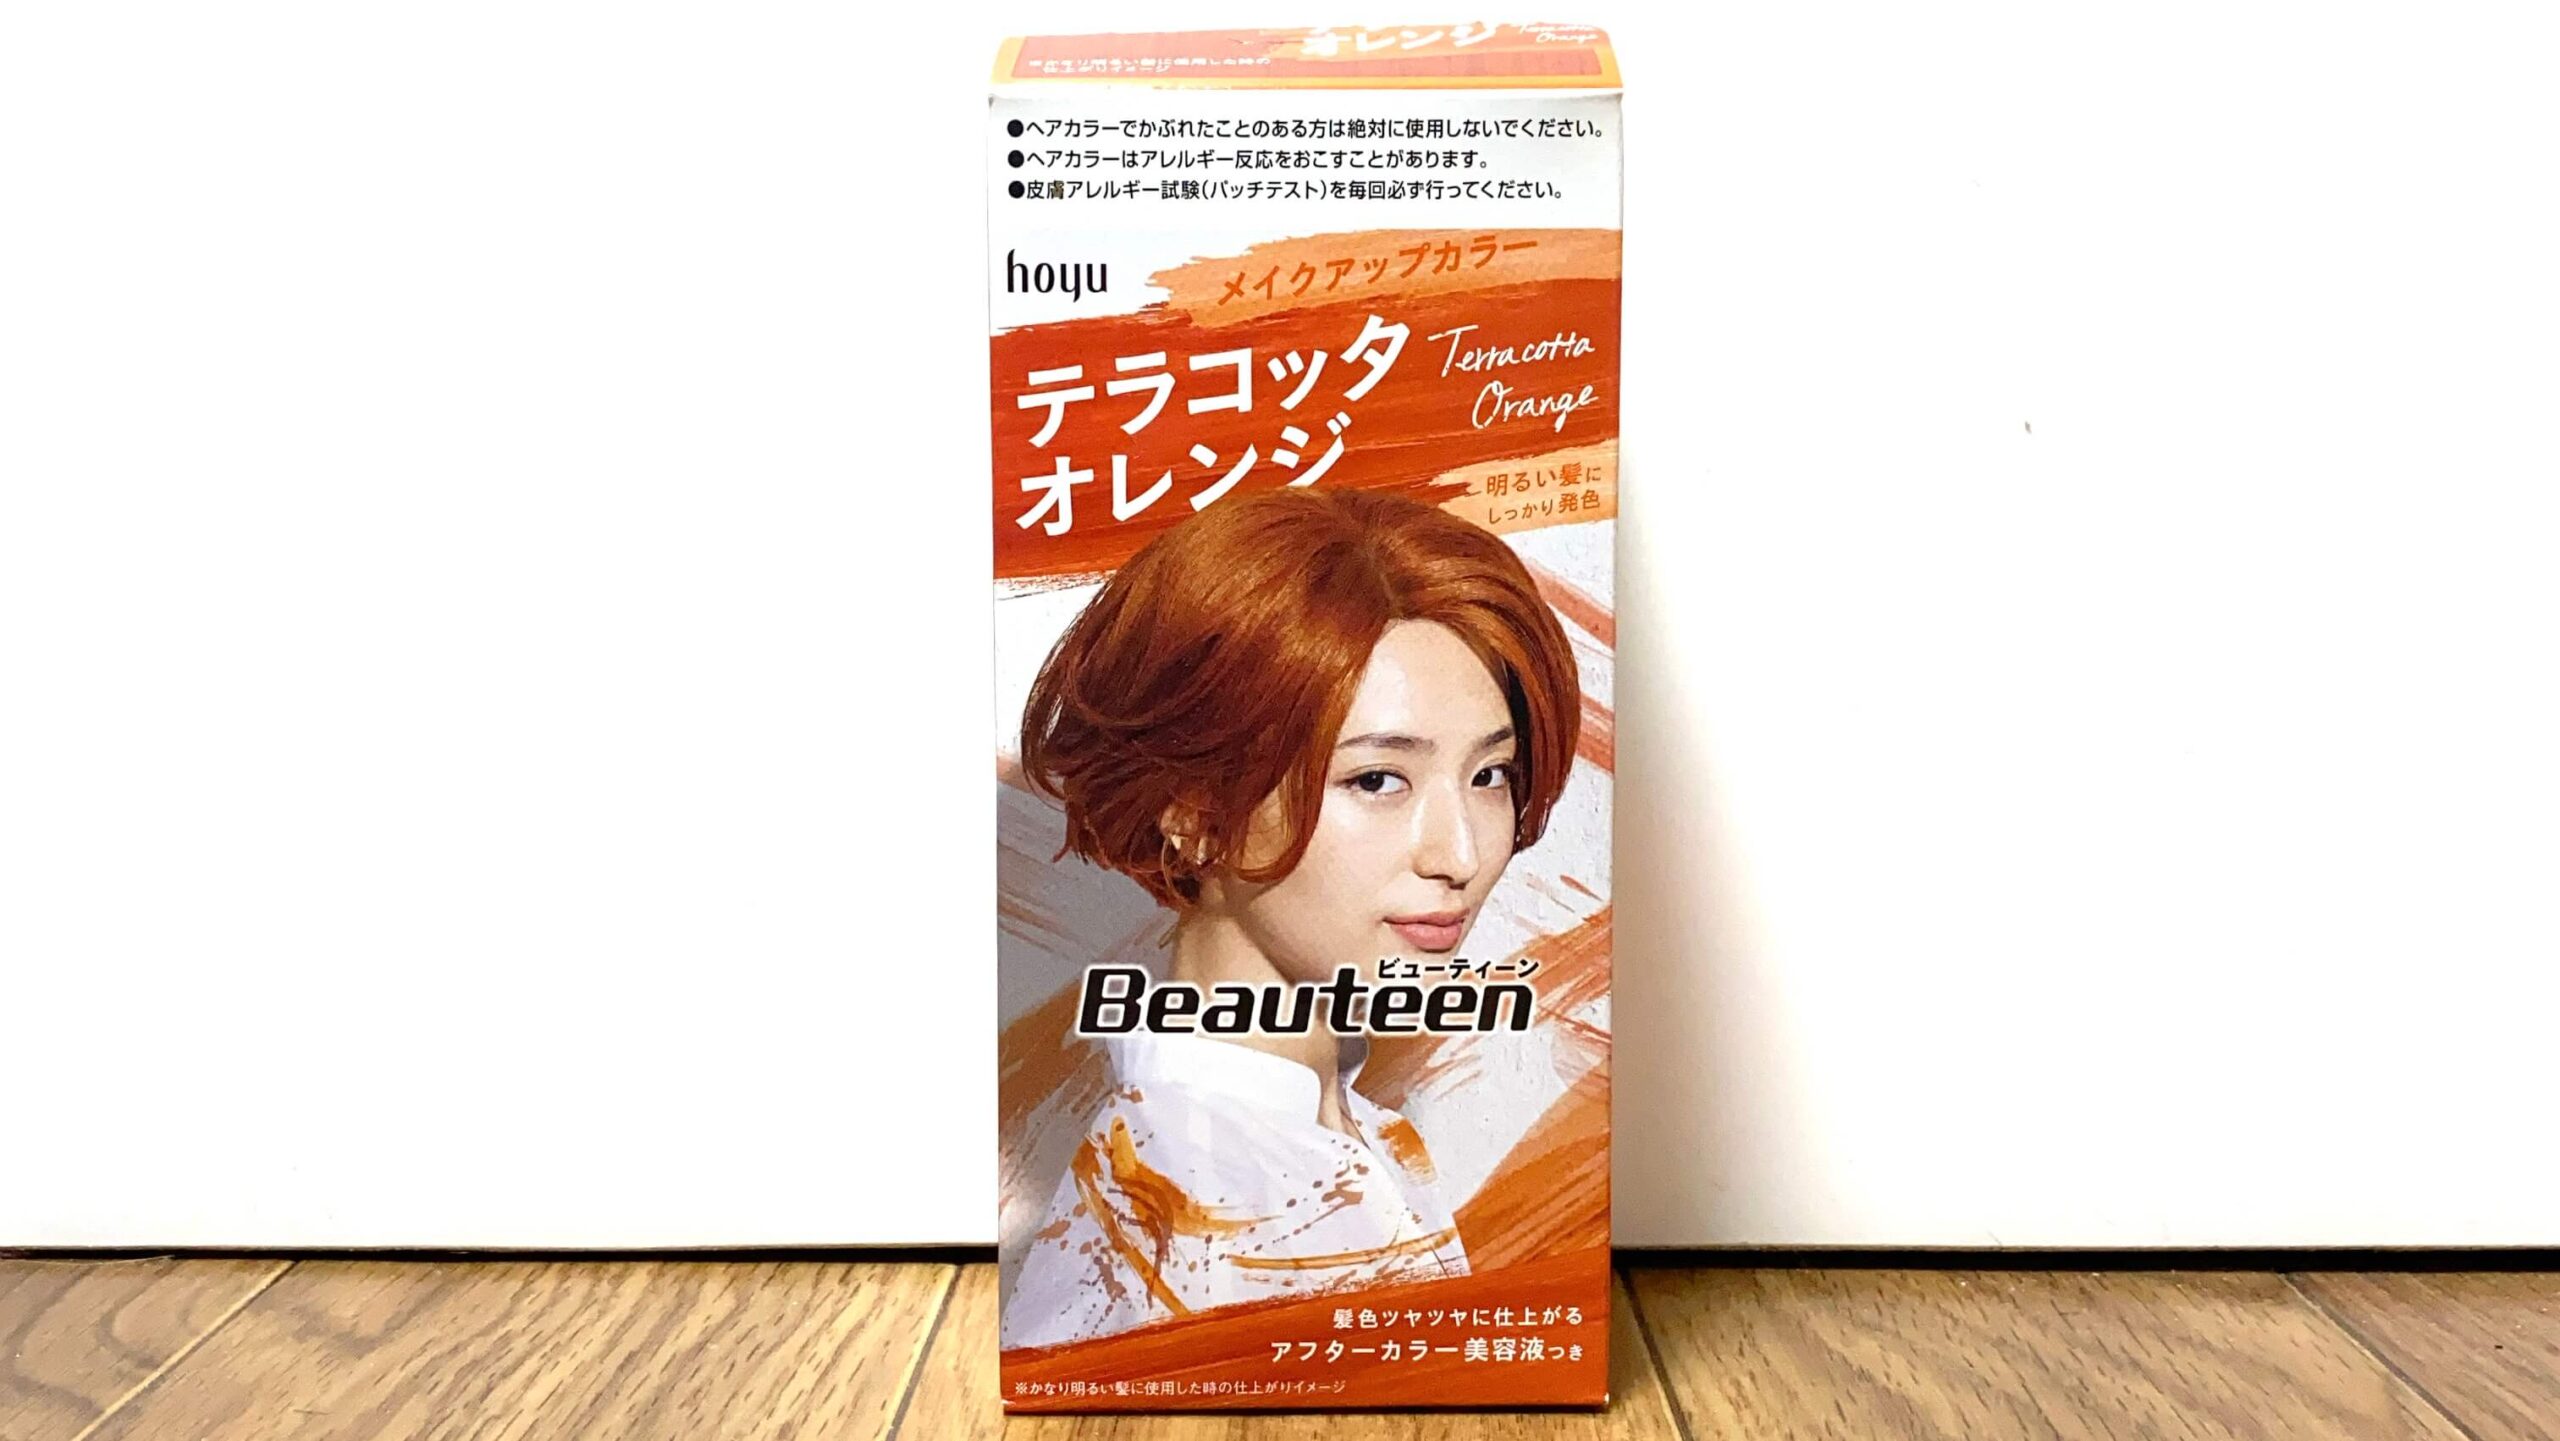 検証 ホーユー ビューティーン テラコッタオレンジを実際に使用しレビュー評価します Hair Art